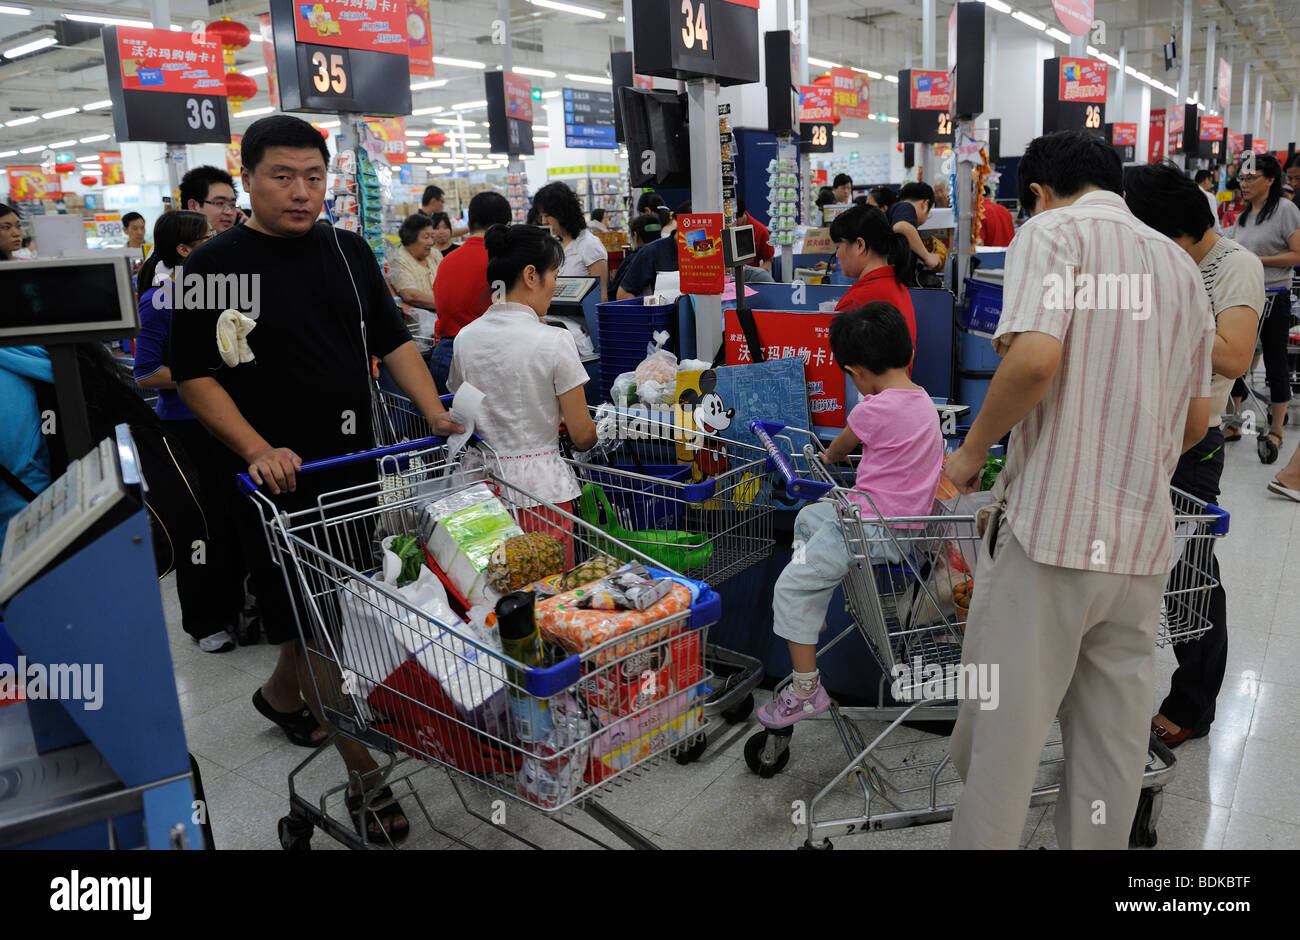 Clientes en la caja del supermercado Wal-Mart en Beijing, China. 2009 Foto de stock